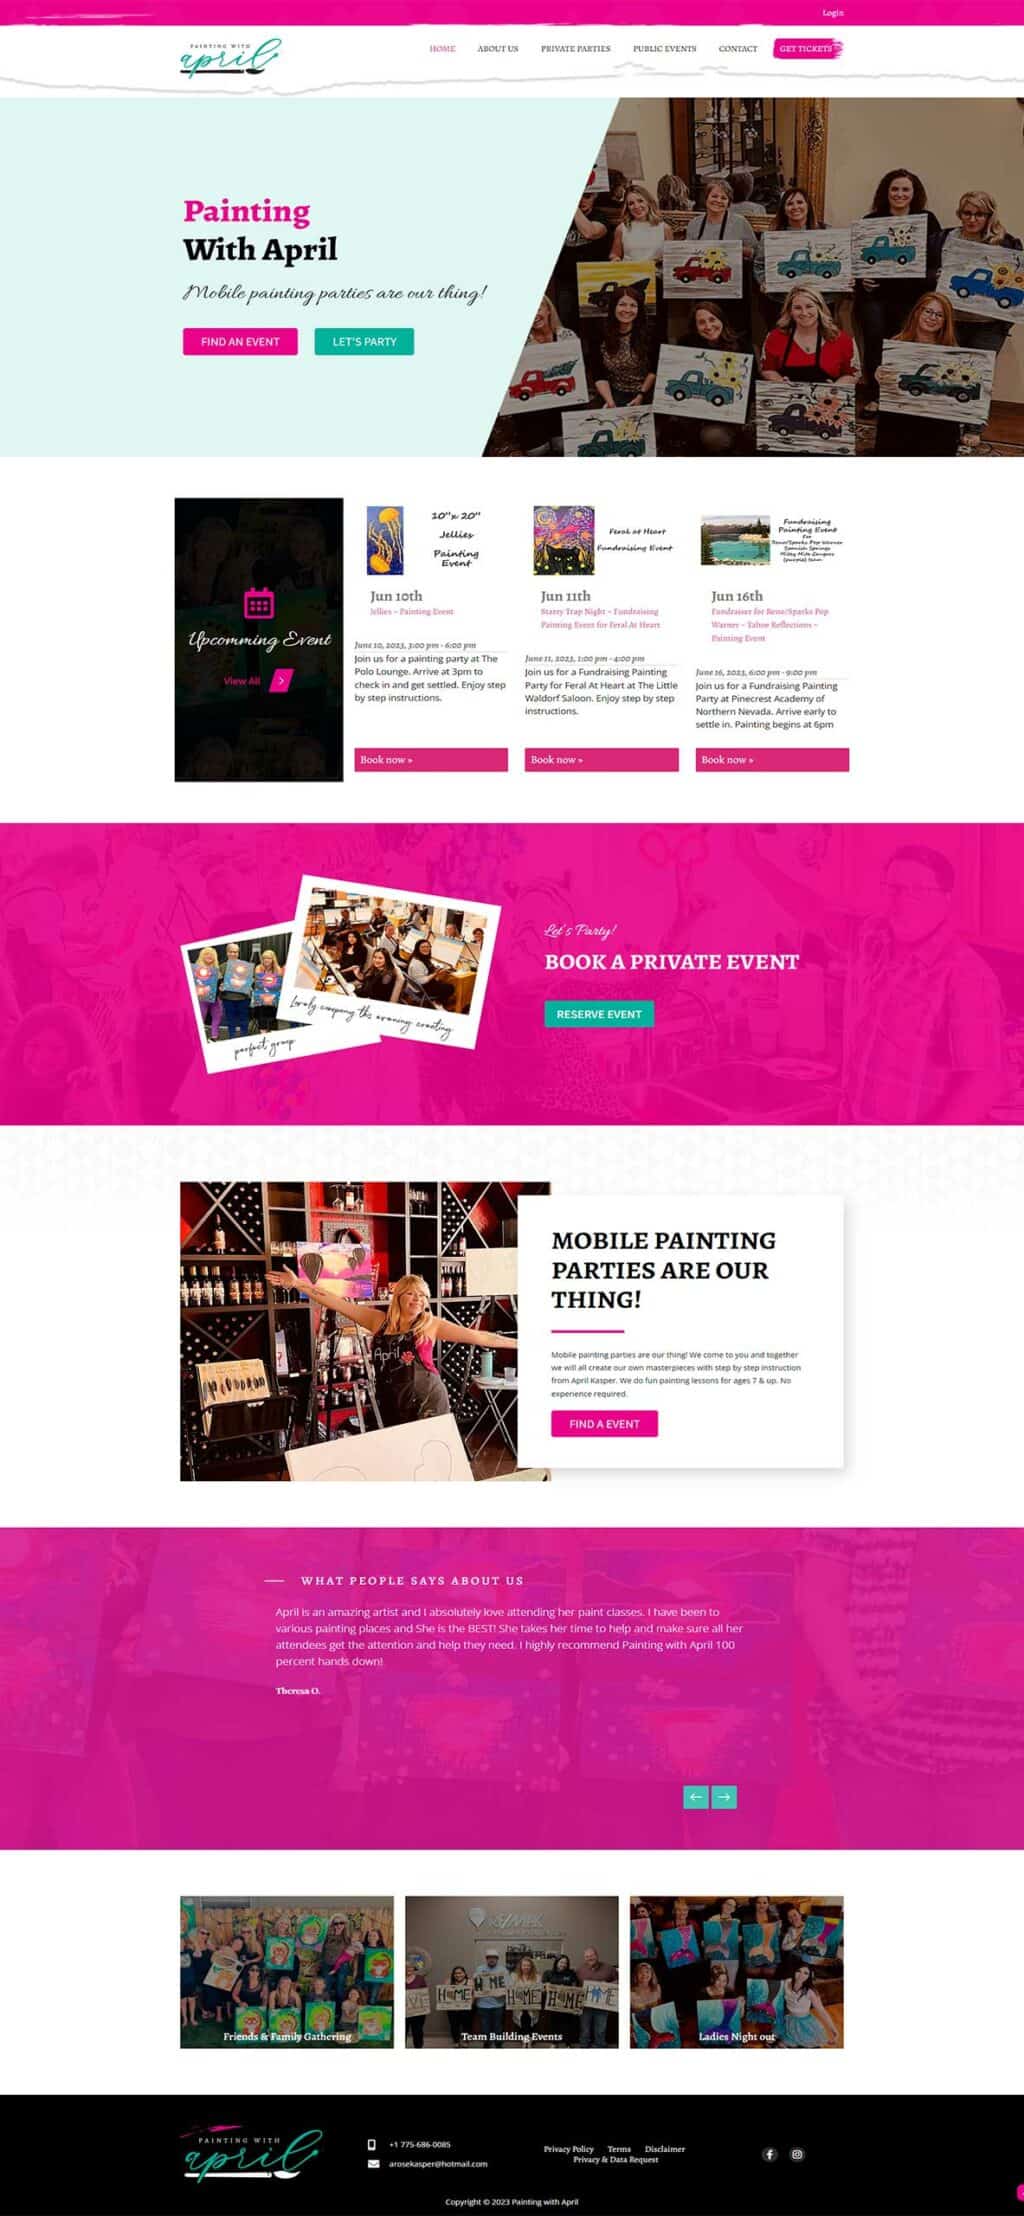 the website design for women's art